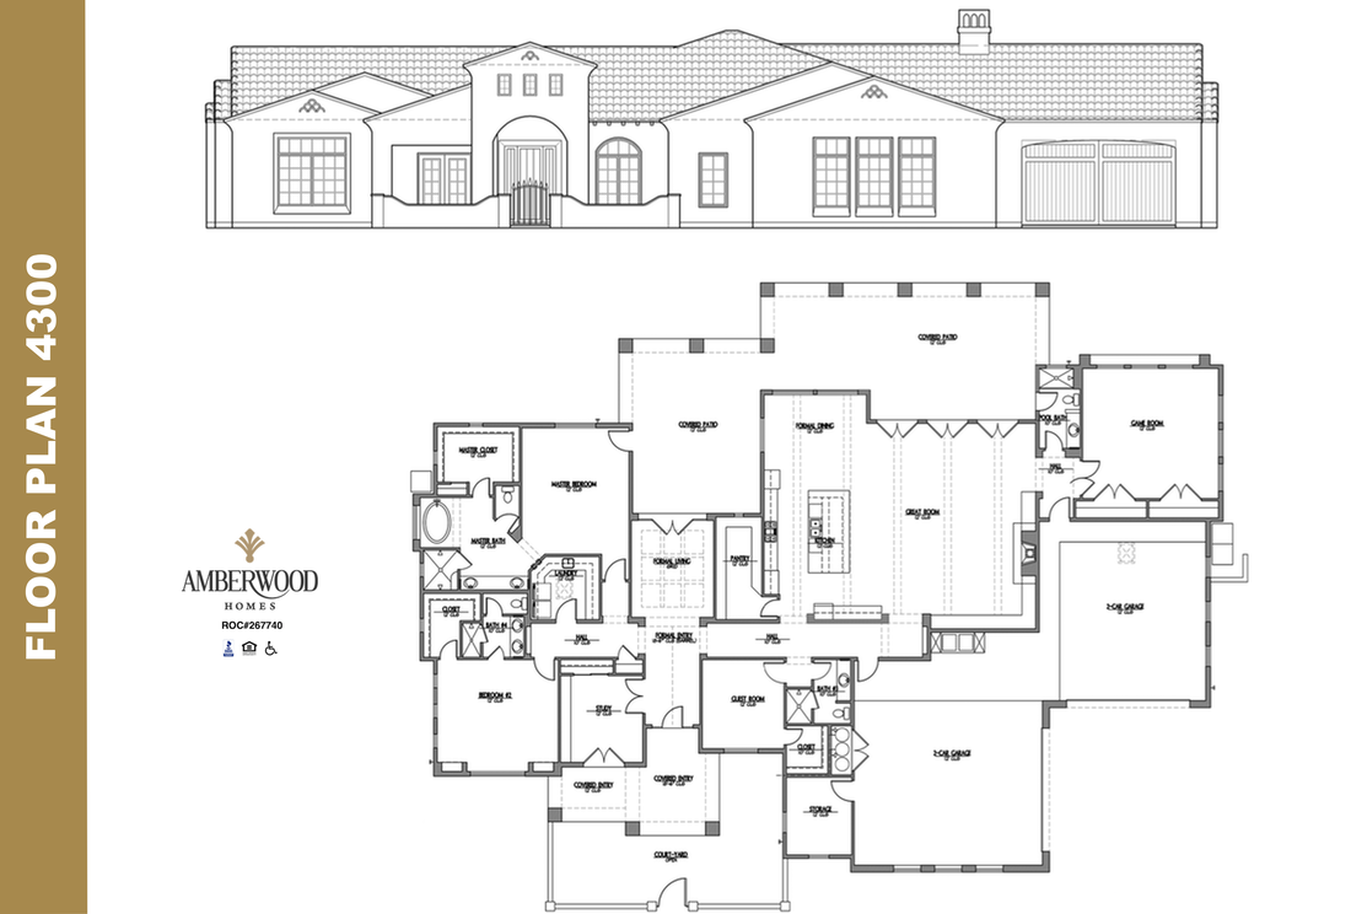 Amberwood homes floor plan 4300